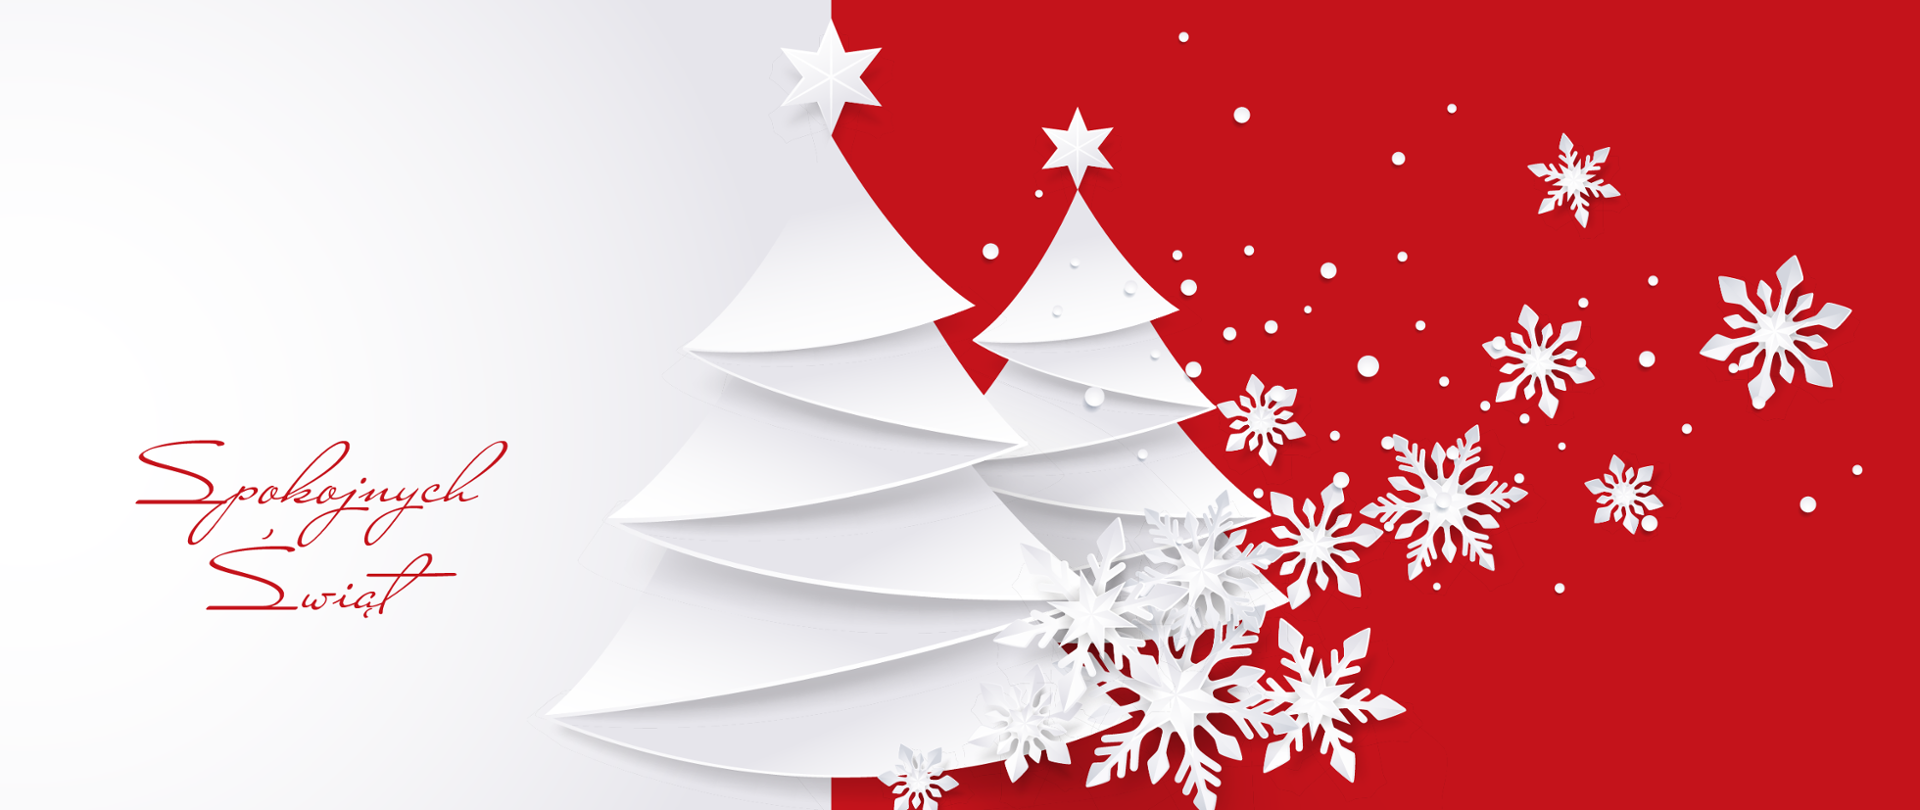 Grafika bożonarodzeniowa. Na środku dwie choinki z płatkami śniegu. Po lewo napis spokojnych świąt.